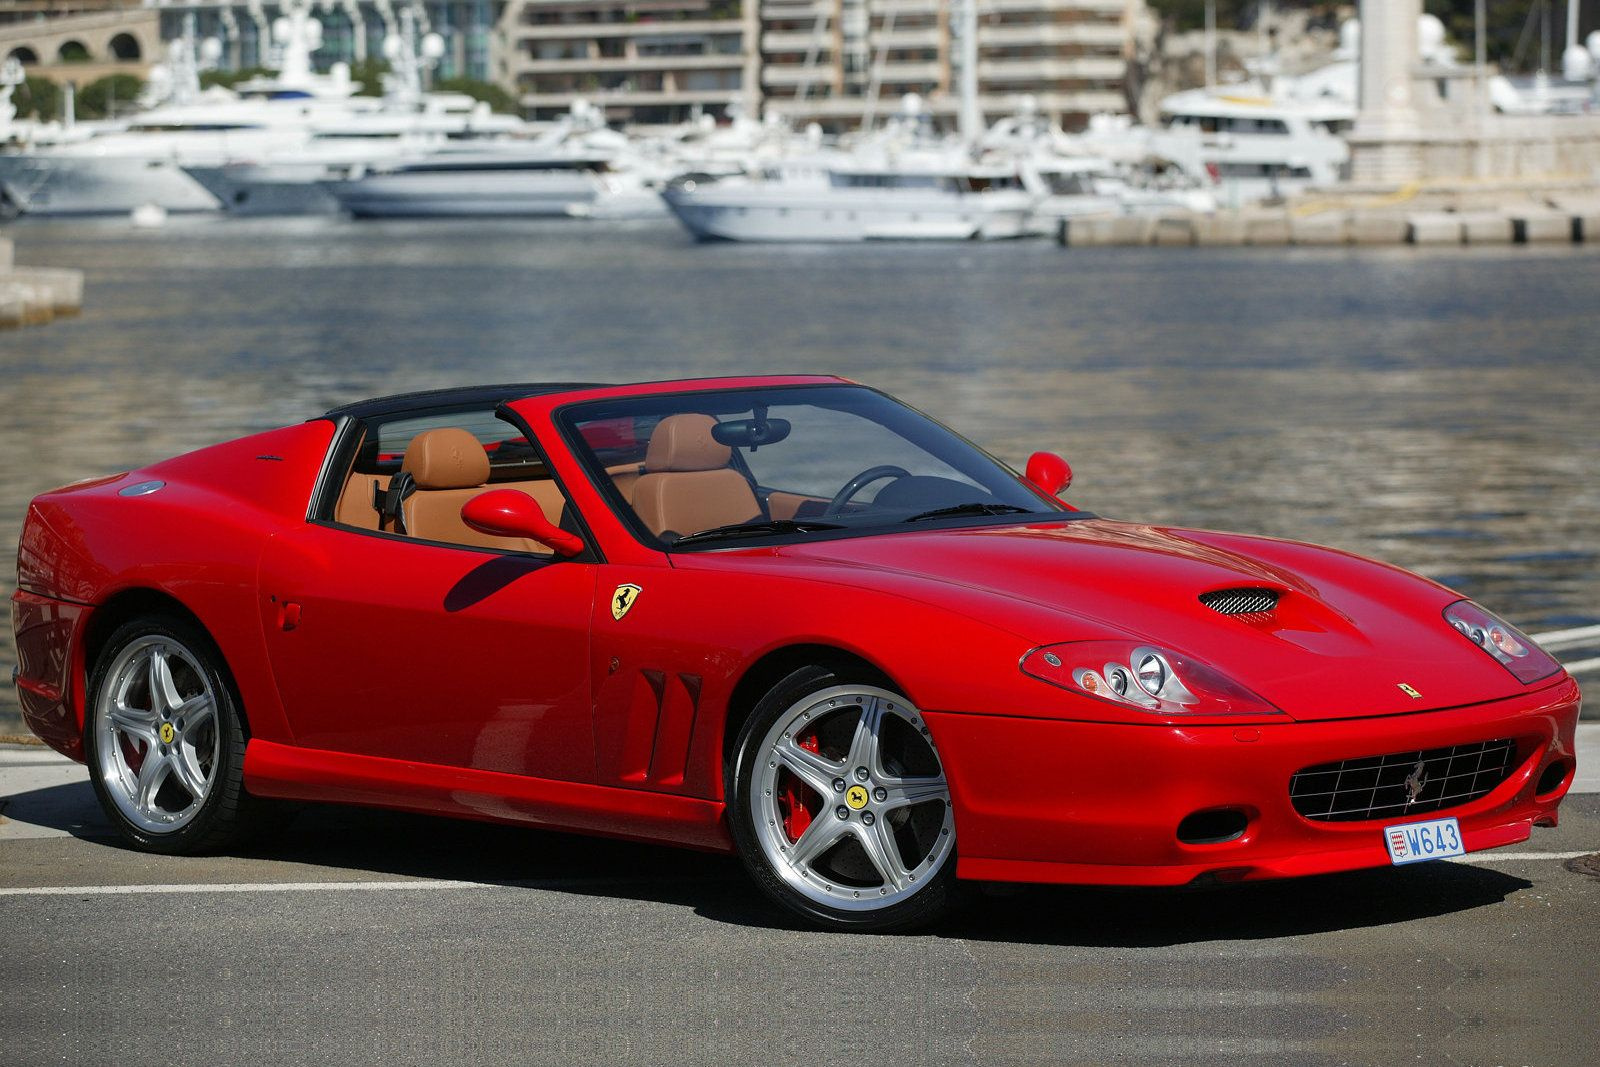 Két éve olyan hibridet is árul a Ferrari, amely csak elektromosan is képes haladni. Ez az SF90 Stradale